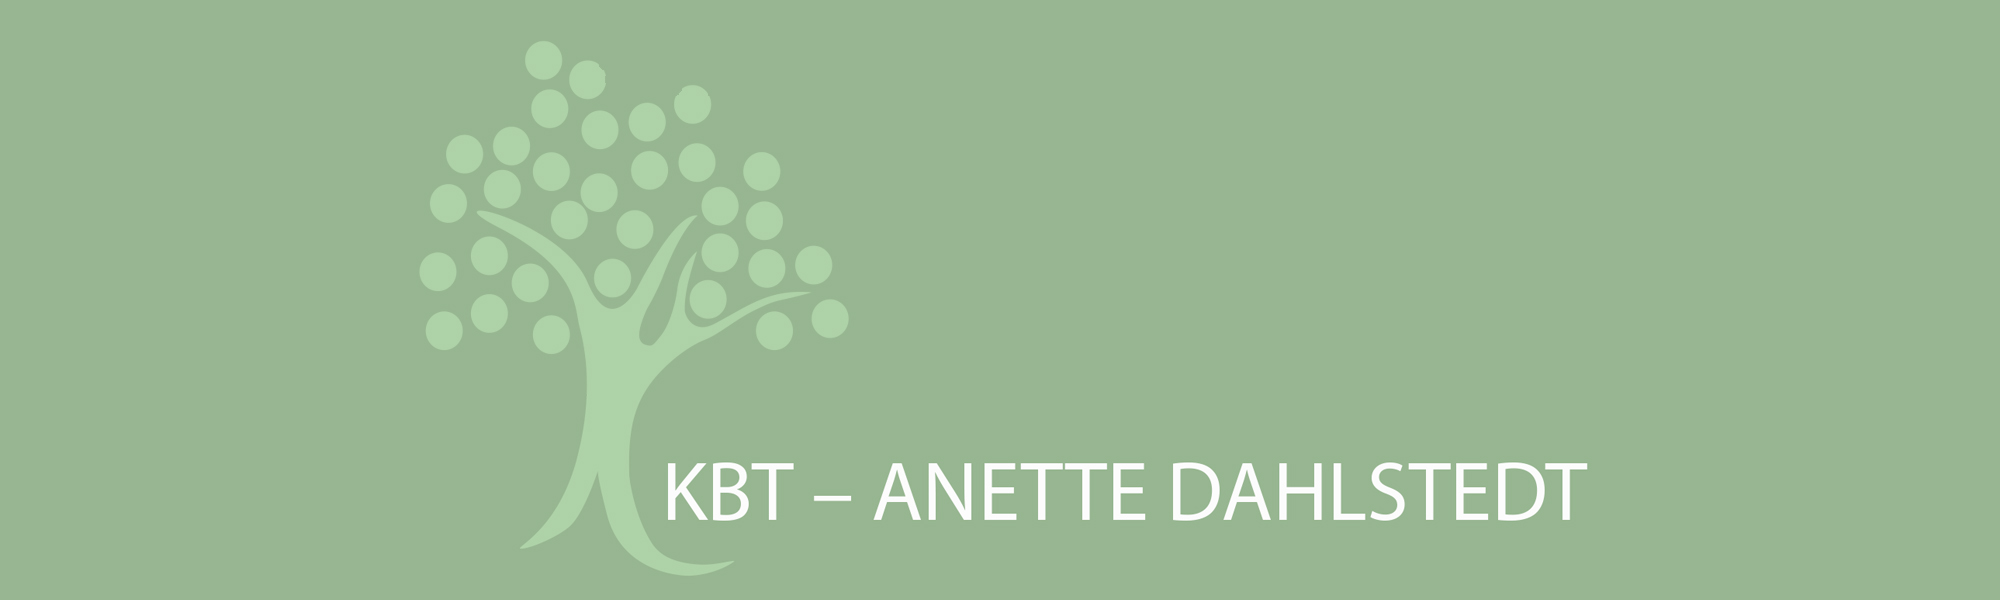 KBT - Anette Dahlstedt